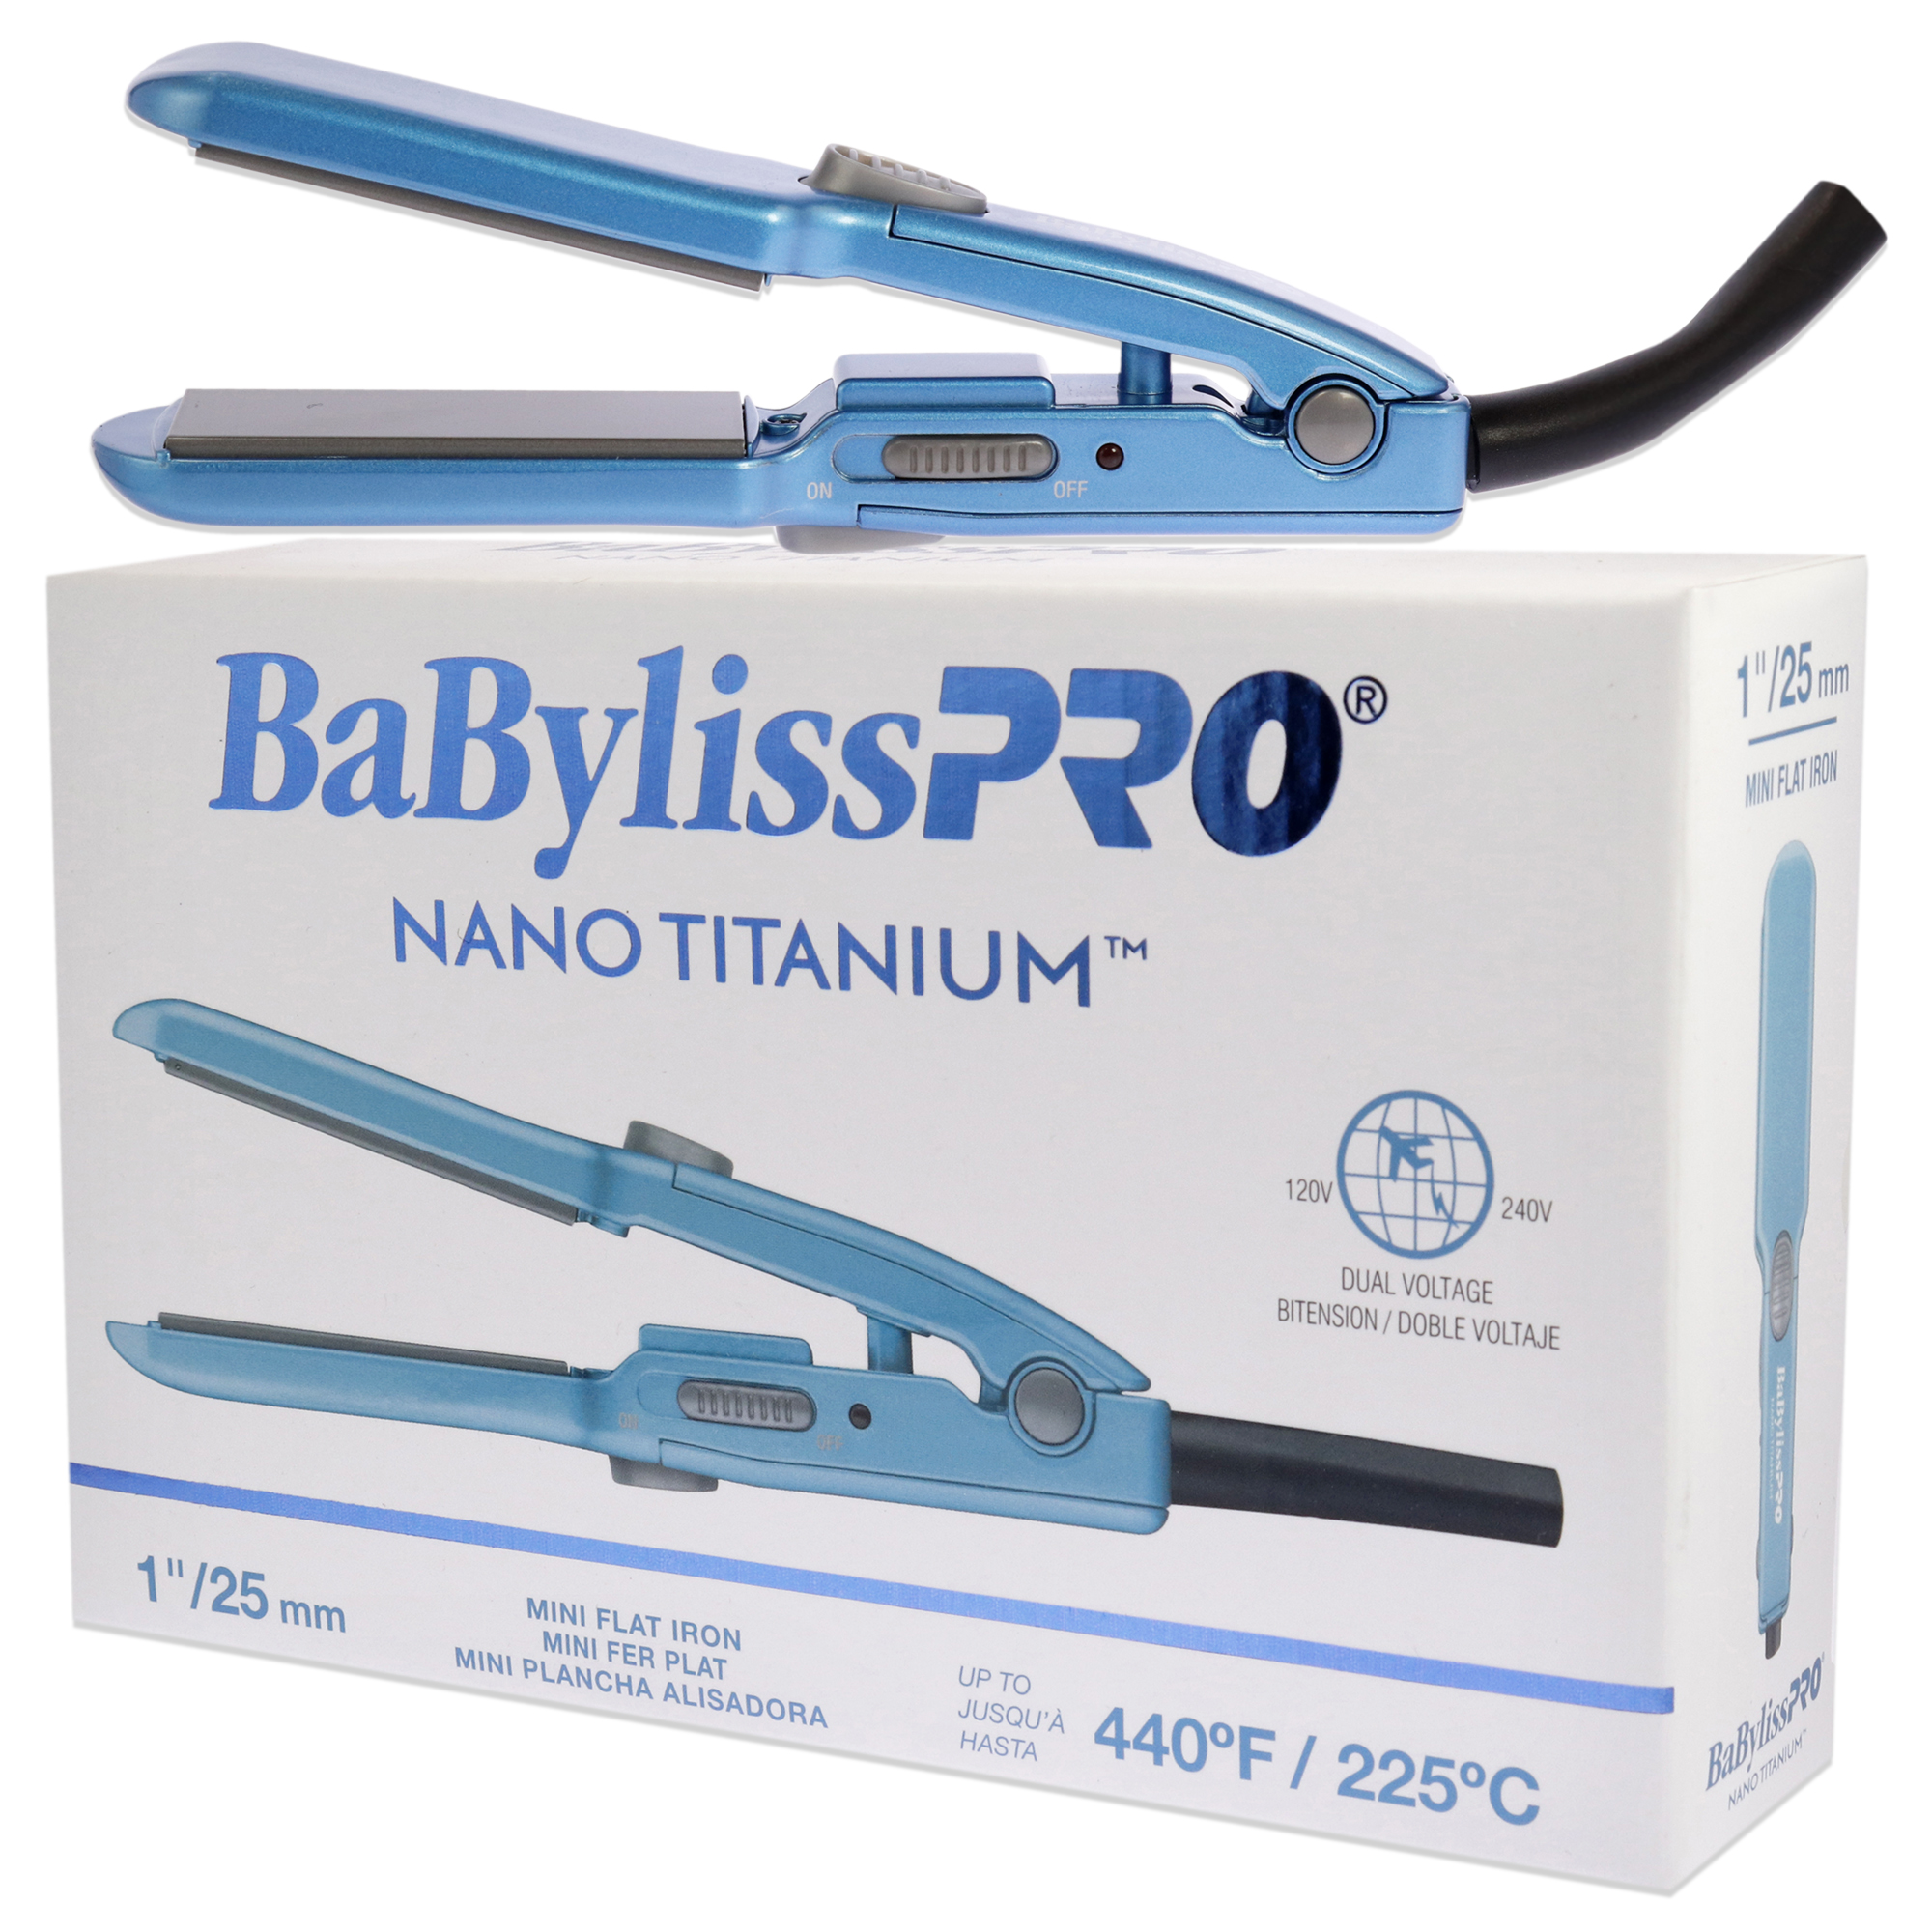 BaBylissPRO Nano Titanium Mini Flat Iron - BNT3053UC - Blue, 1 Inch Flat Iron - image 4 of 4